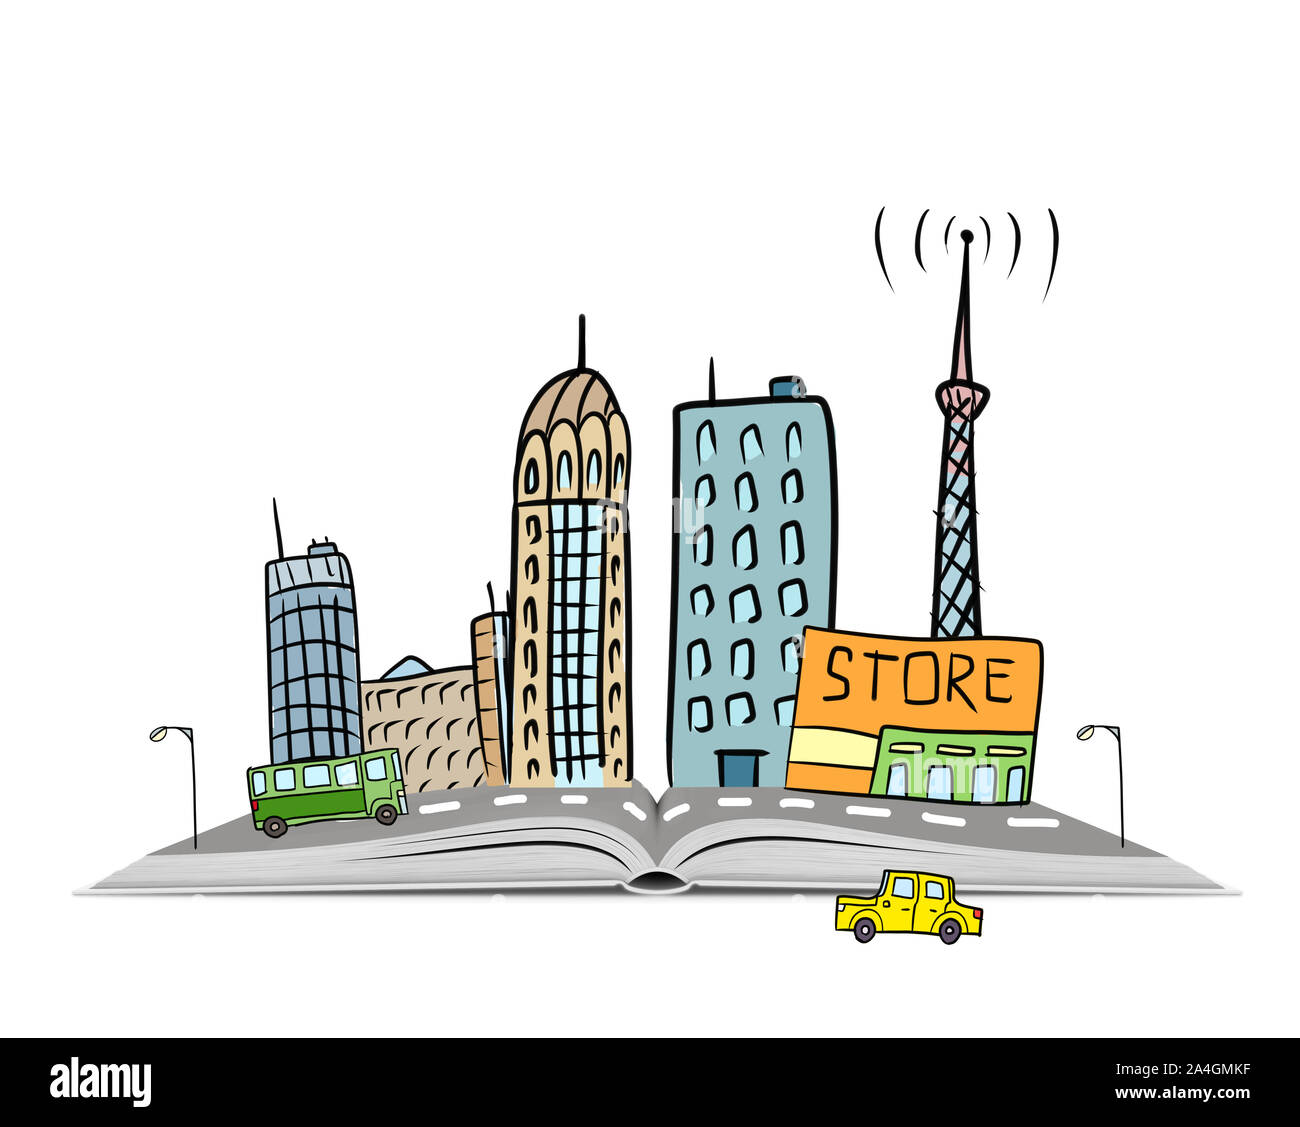 Scène urbaine dessiné à la main avec les immeubles, les voitures et une route sur un livre ouvert Banque D'Images